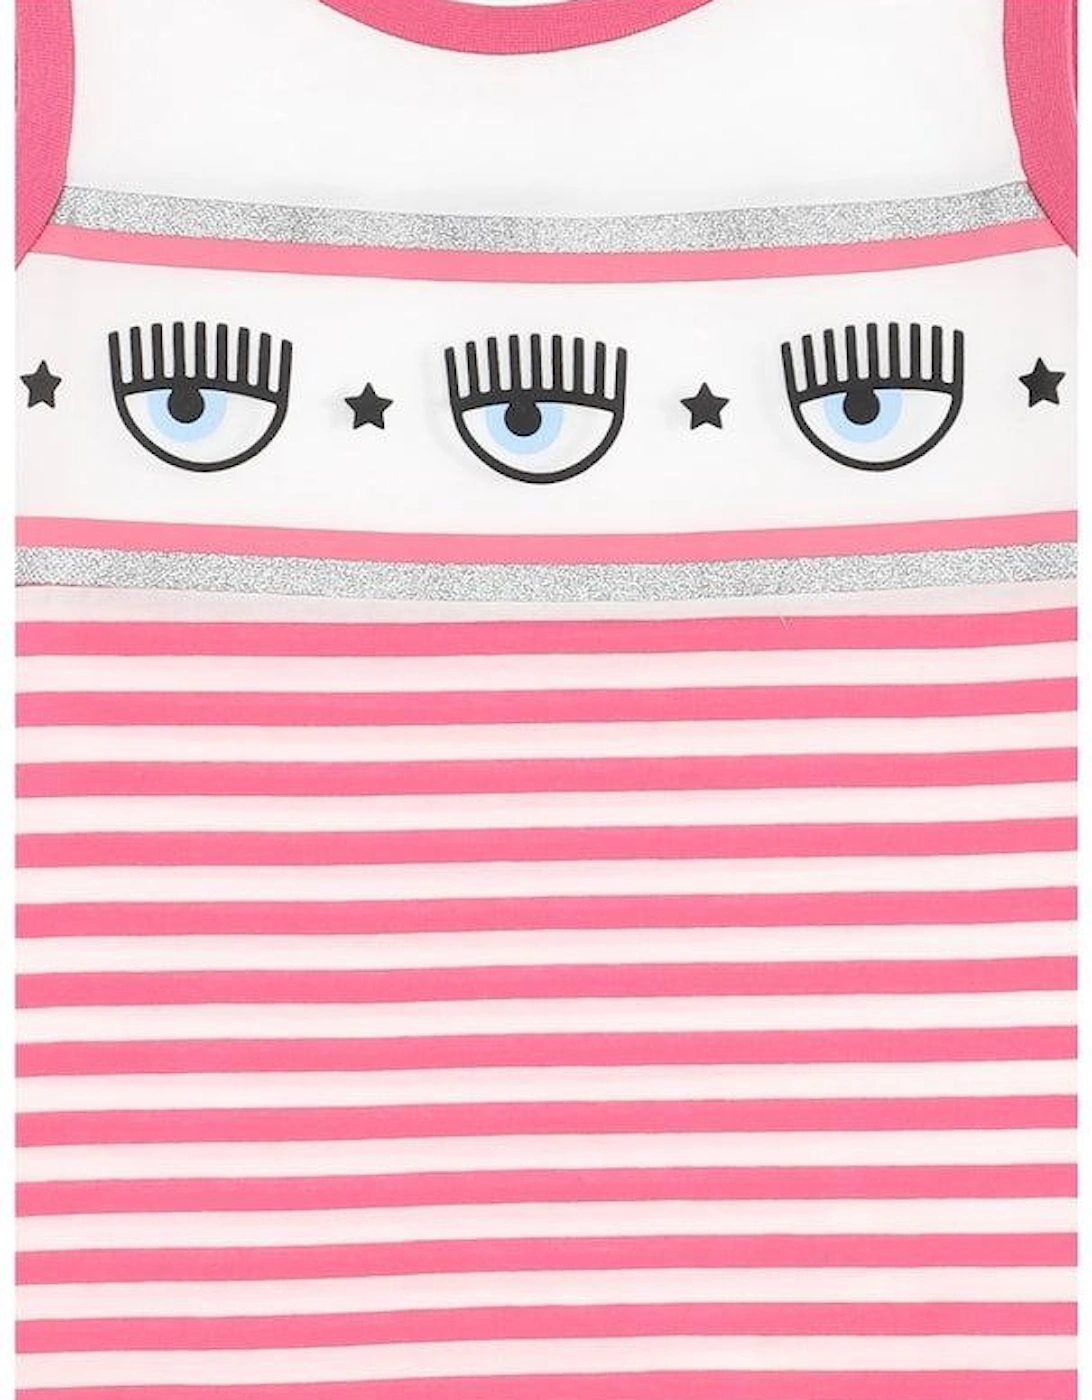 Girls Pink Stripe Logo Dress